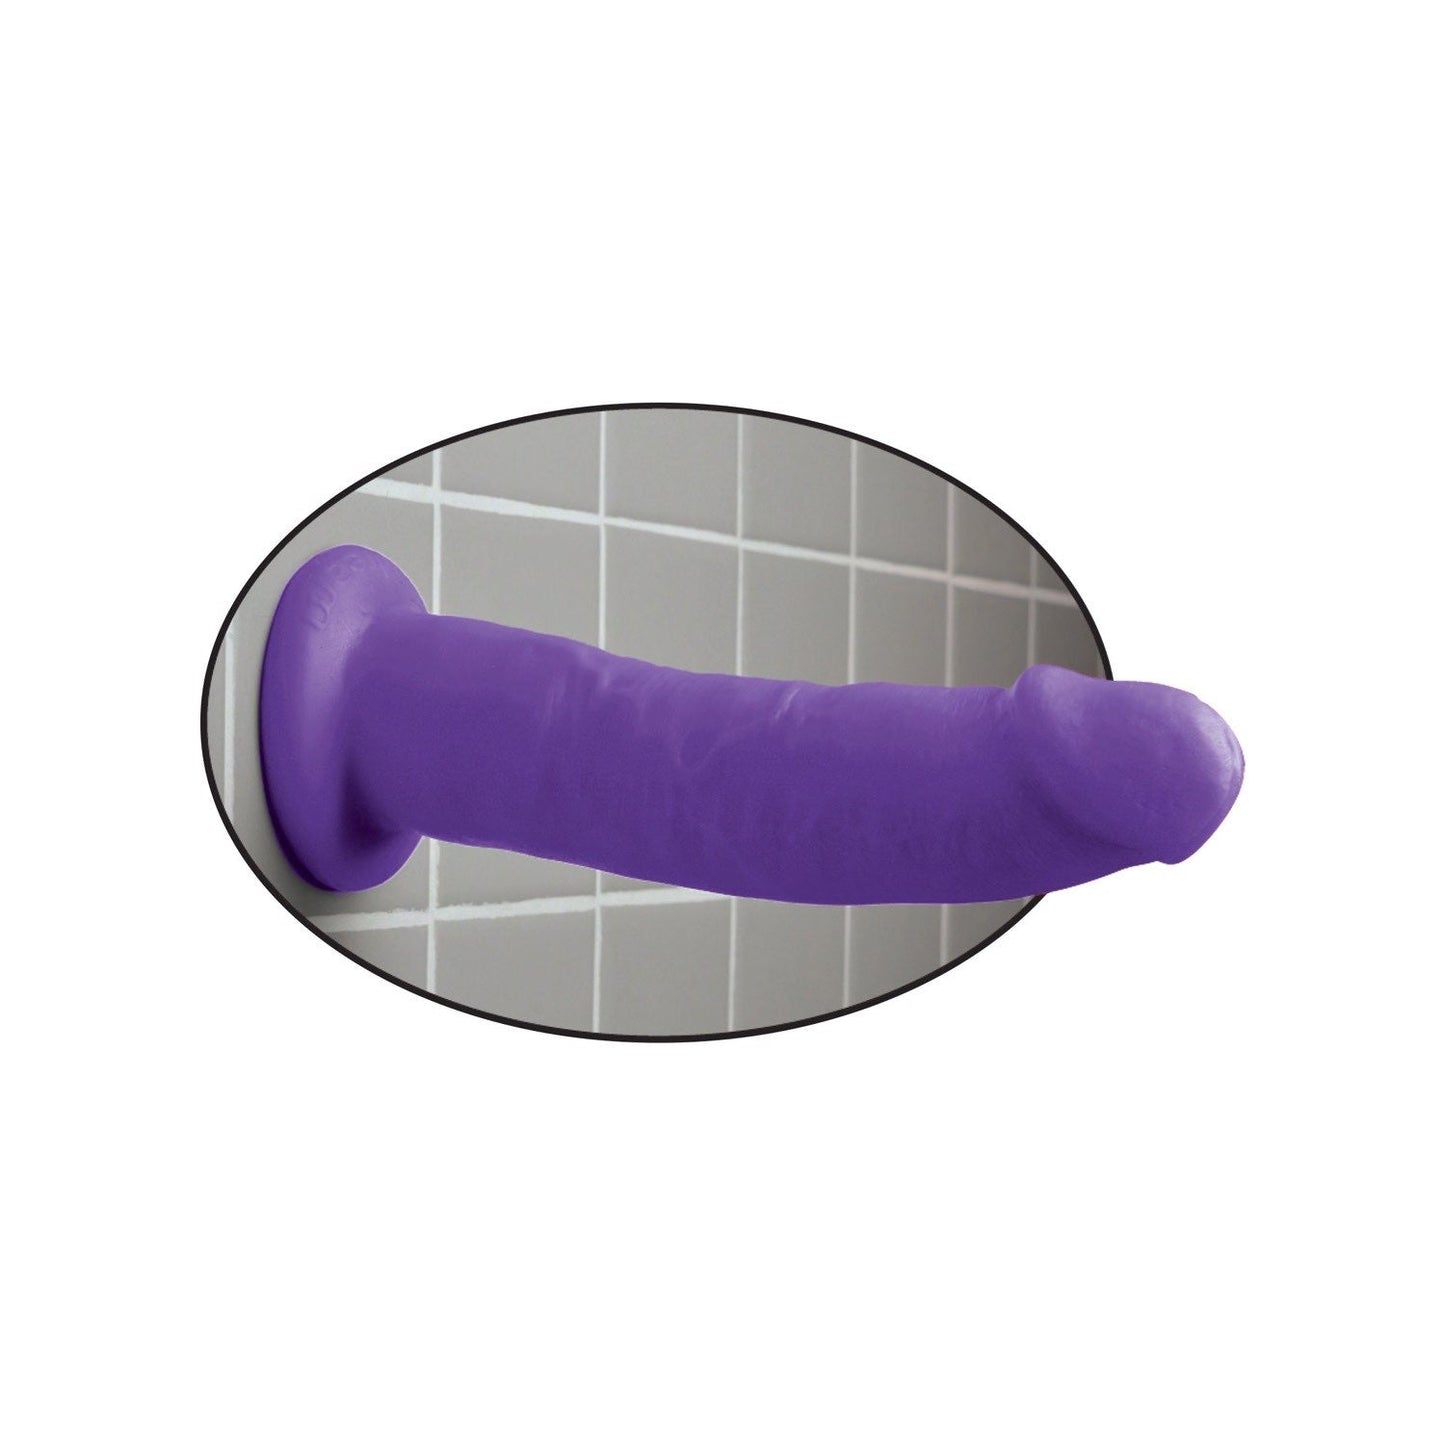 9" 假阳具 - 紫色 22.9 厘米 东